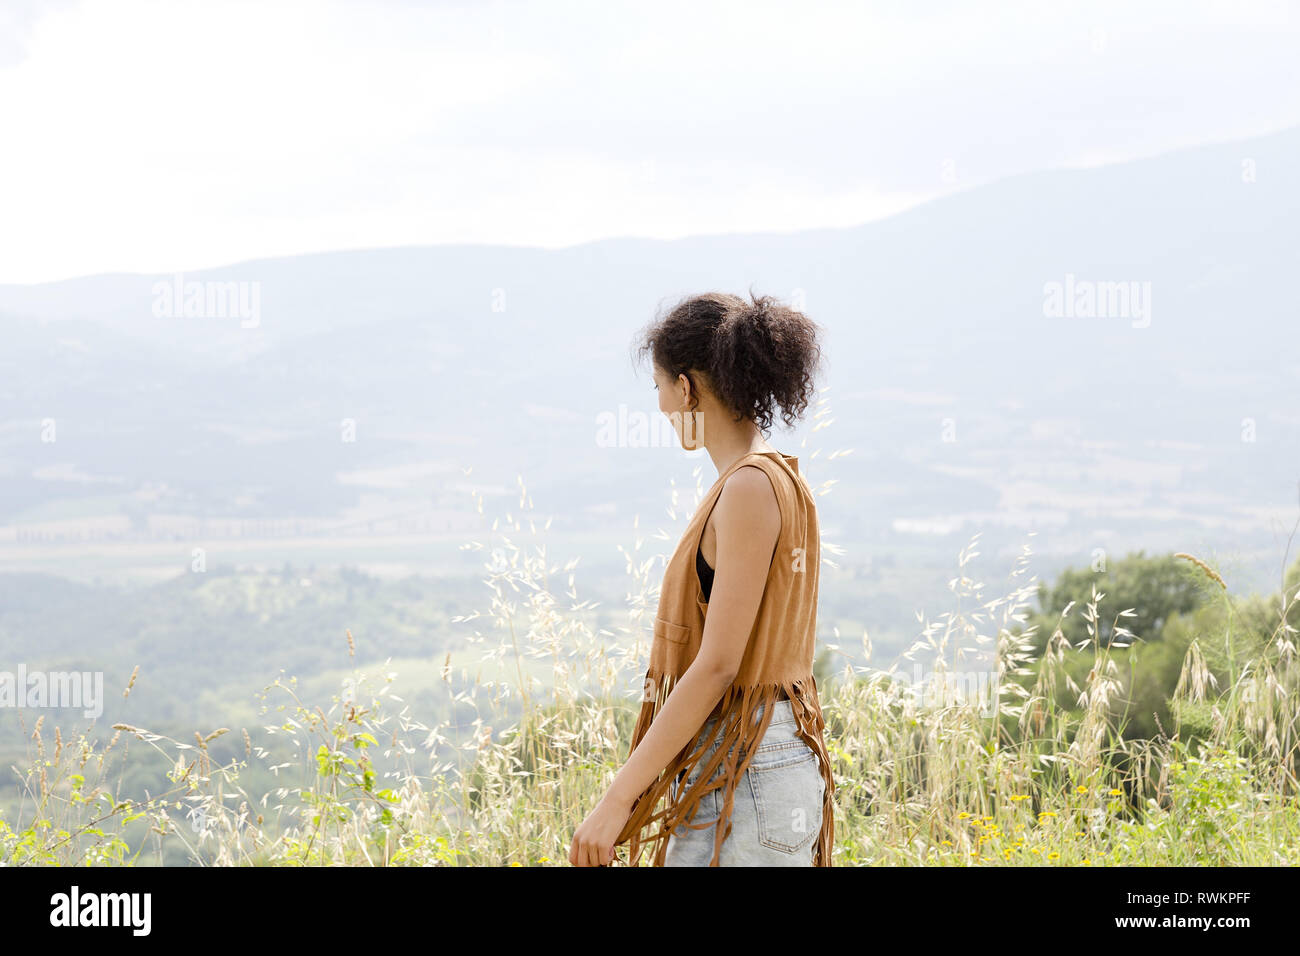 Woman on hilltop, Città della Pieve, Umbria, Italy Stock Photo